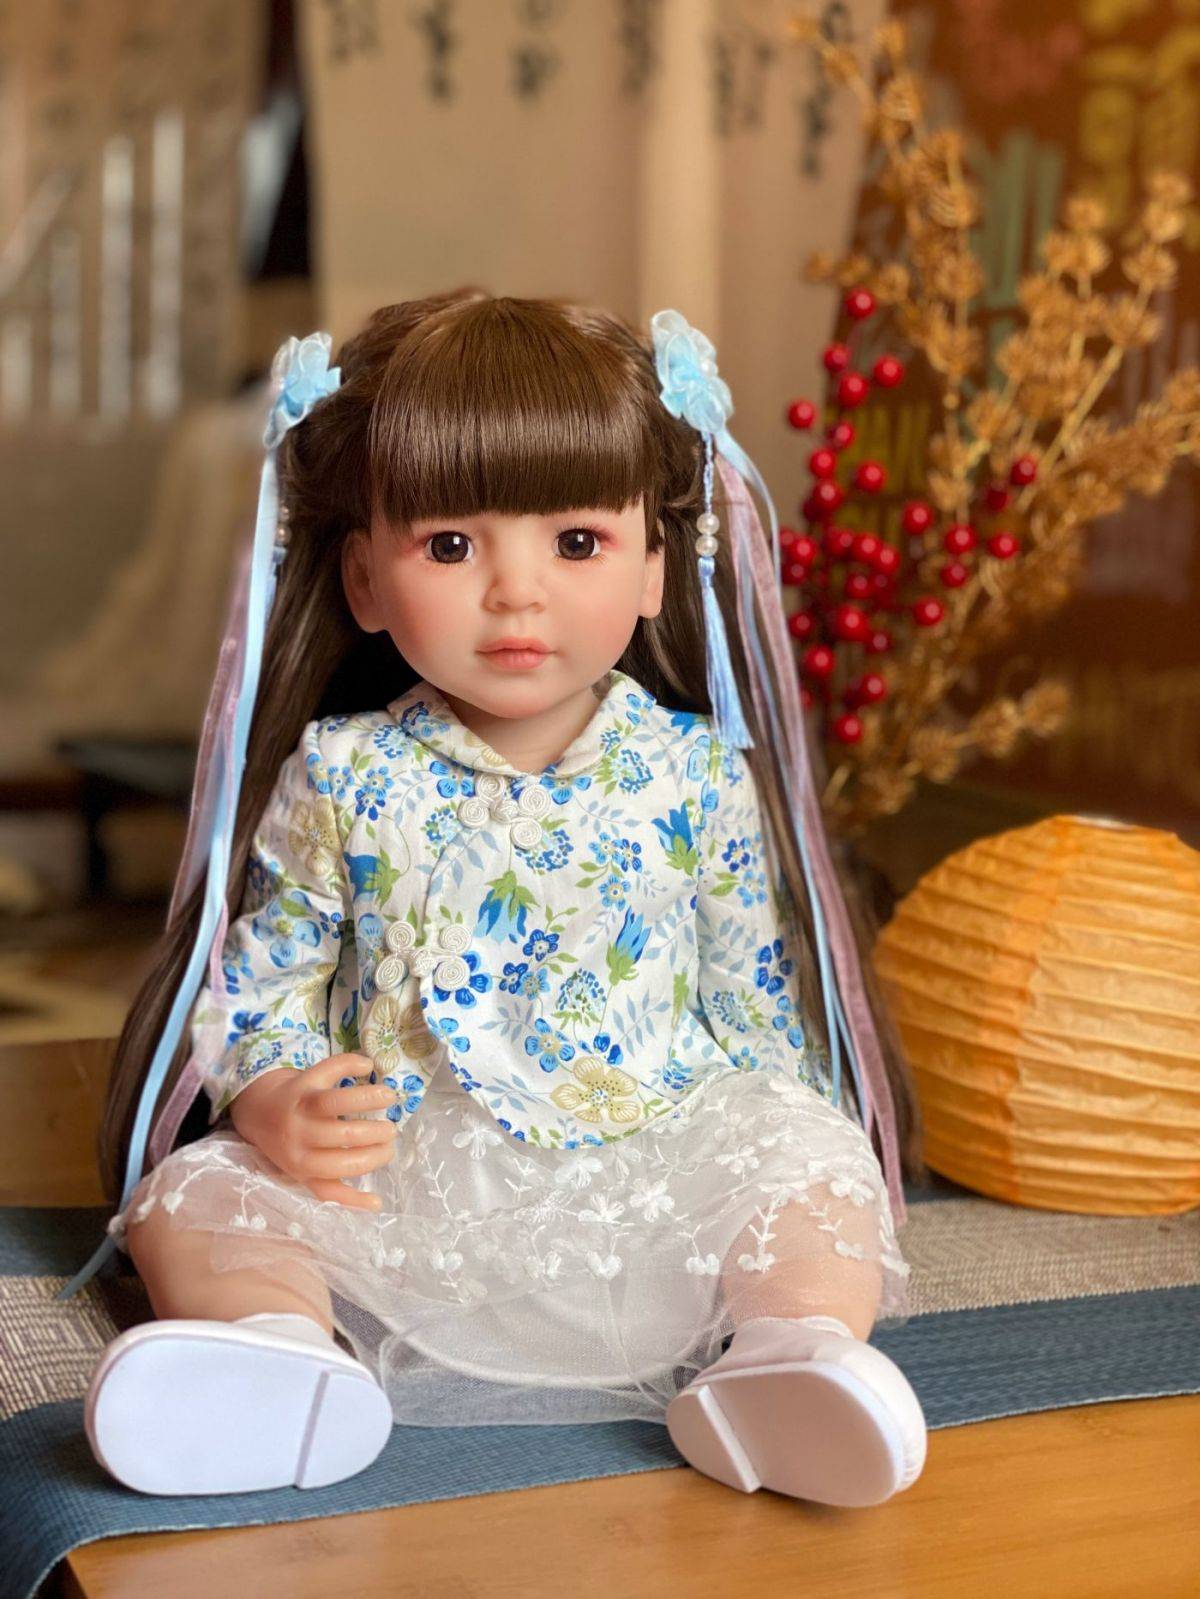 Reborn Baby Dolls Silicone Cute Soft Baby Doll Fashion Bebe Reborn Dolls 55cm Baby Toys for Girls (8)